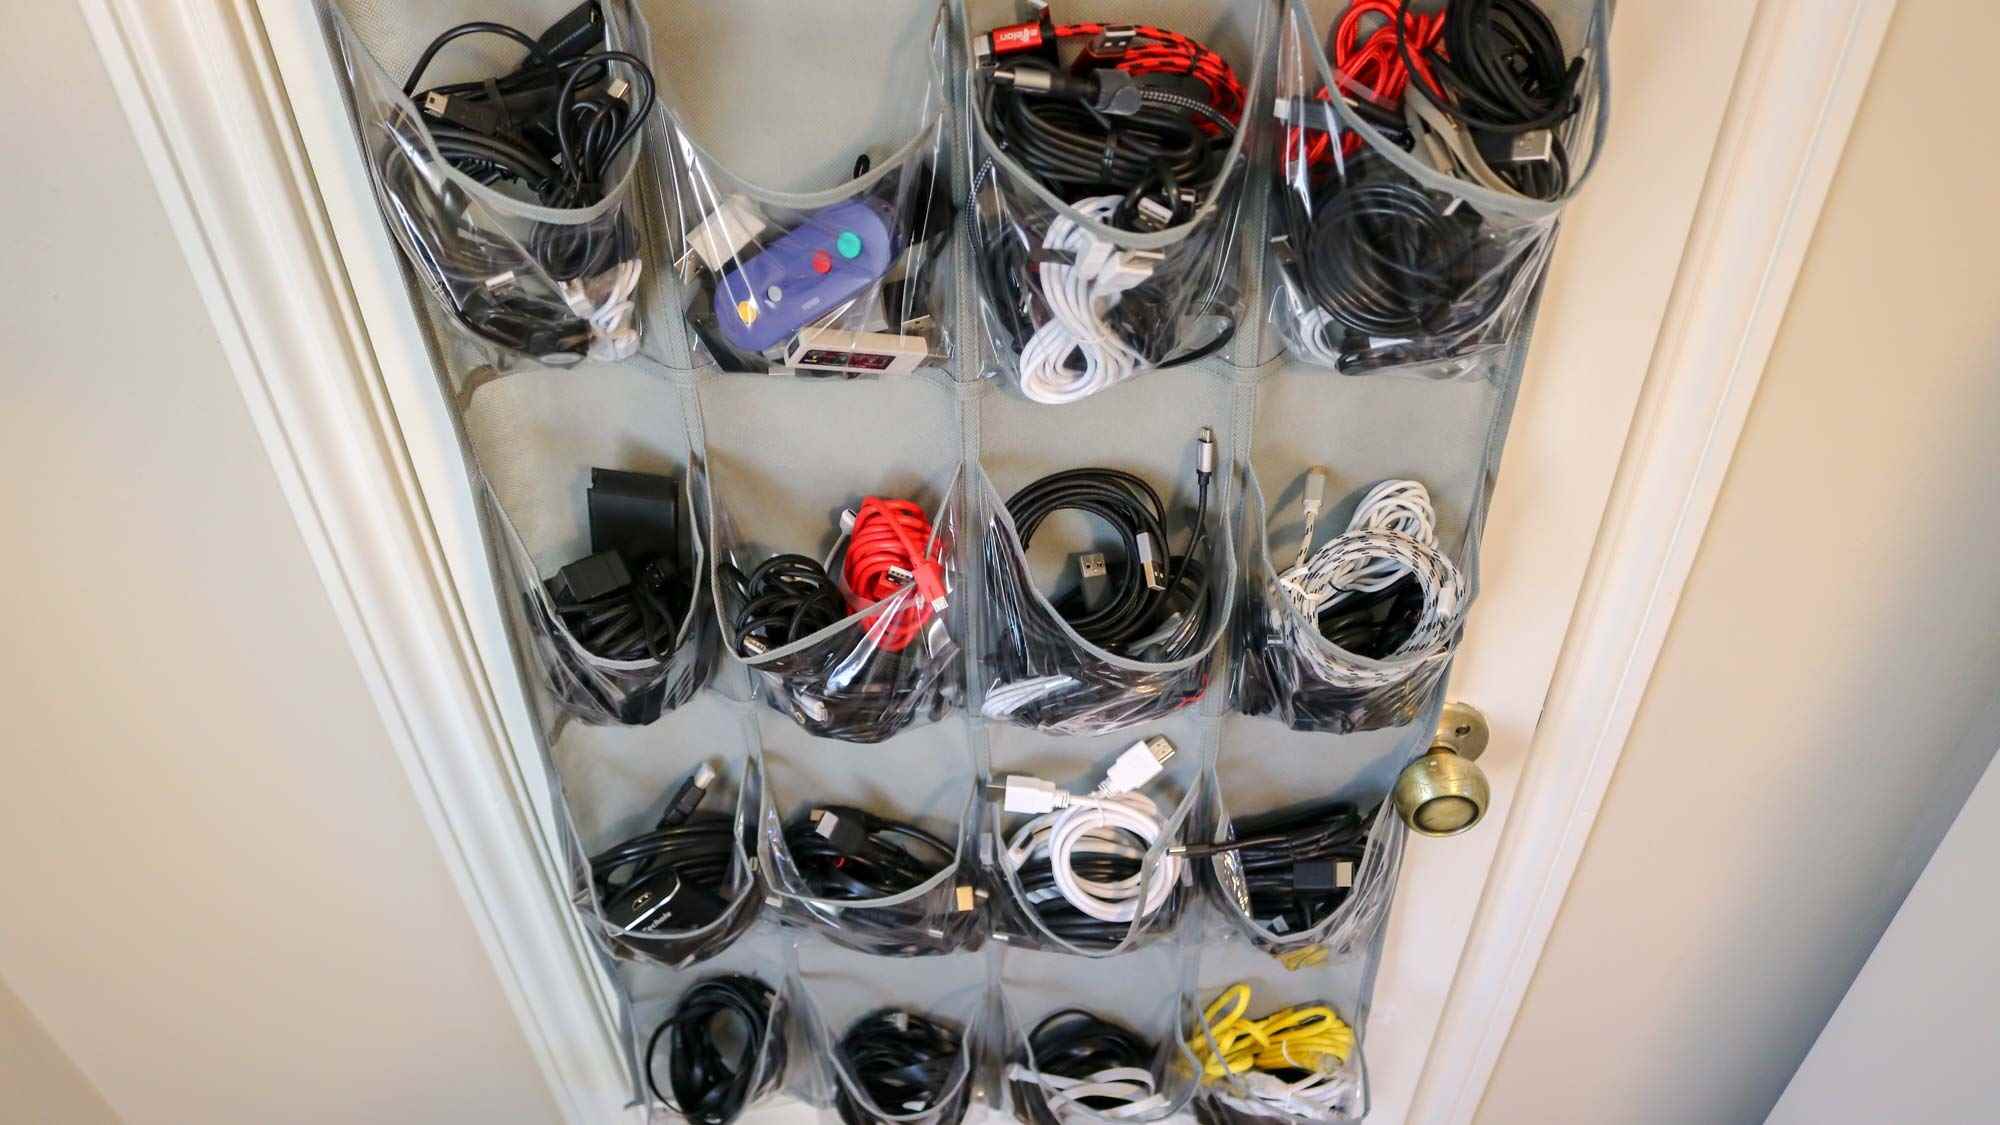 Kapı üstü ayakkabı rafında türe göre düzenlenmiş kablolar